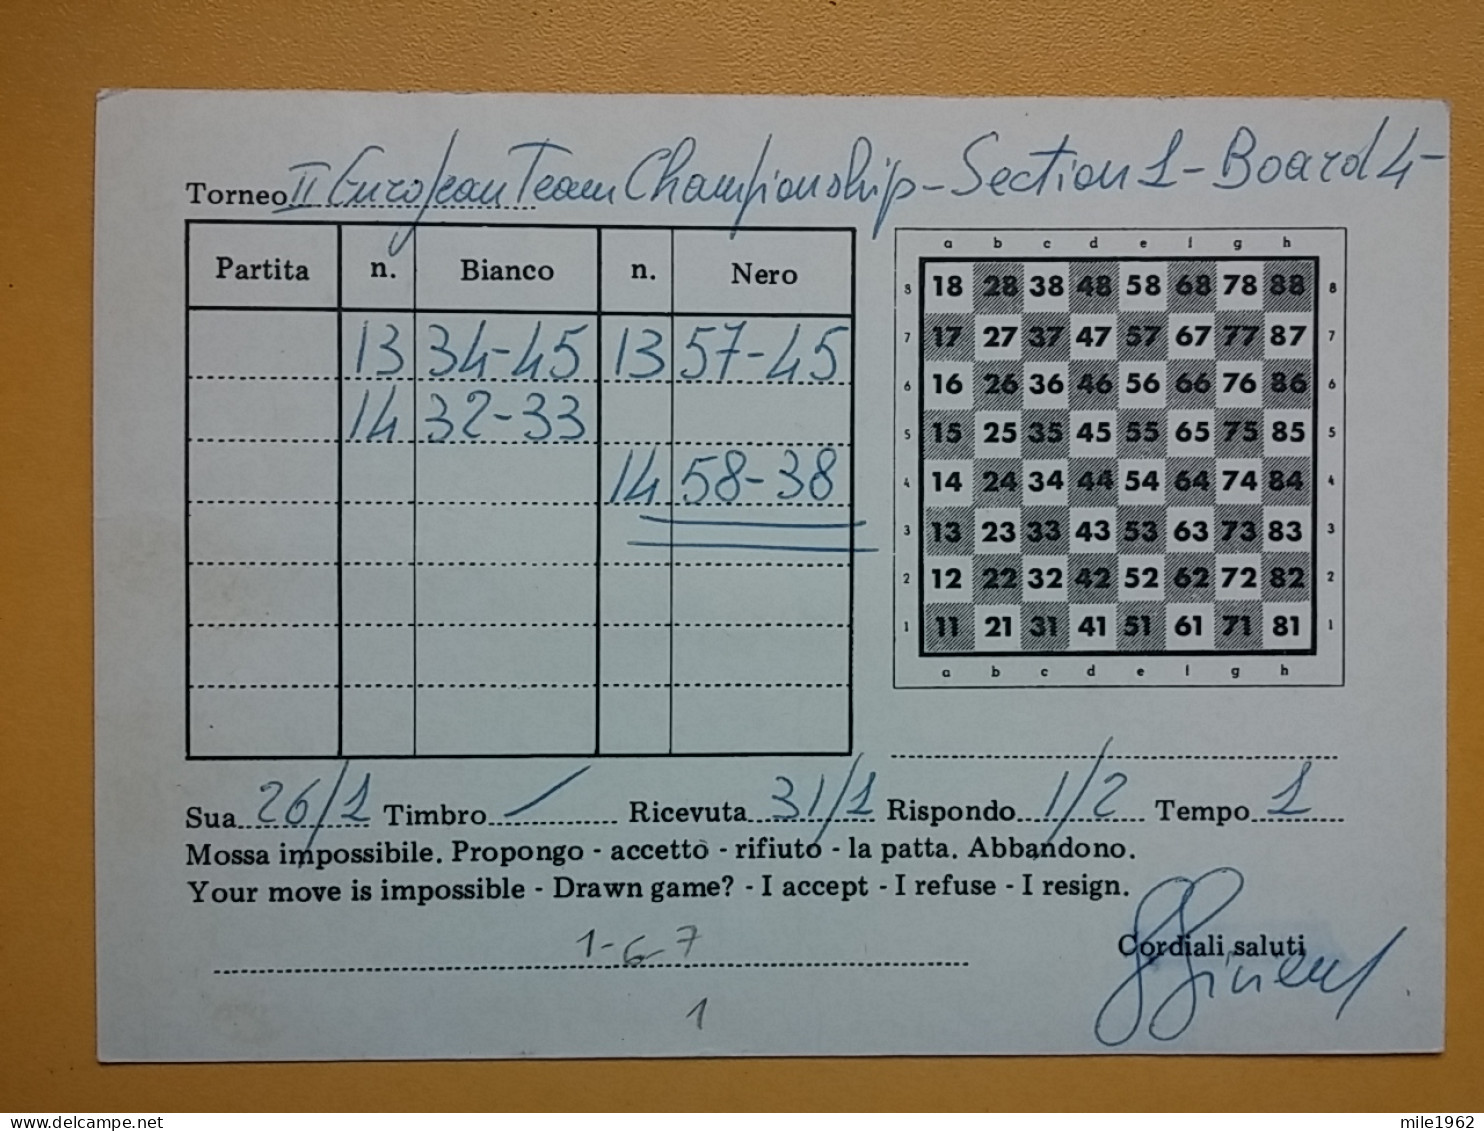 KOV 487-23- Correspondence Chess Fernschach Postcard, S. MARIA, ITALIA - BELGRADE, Schach Chess Ajedrez échecs,  - Echecs